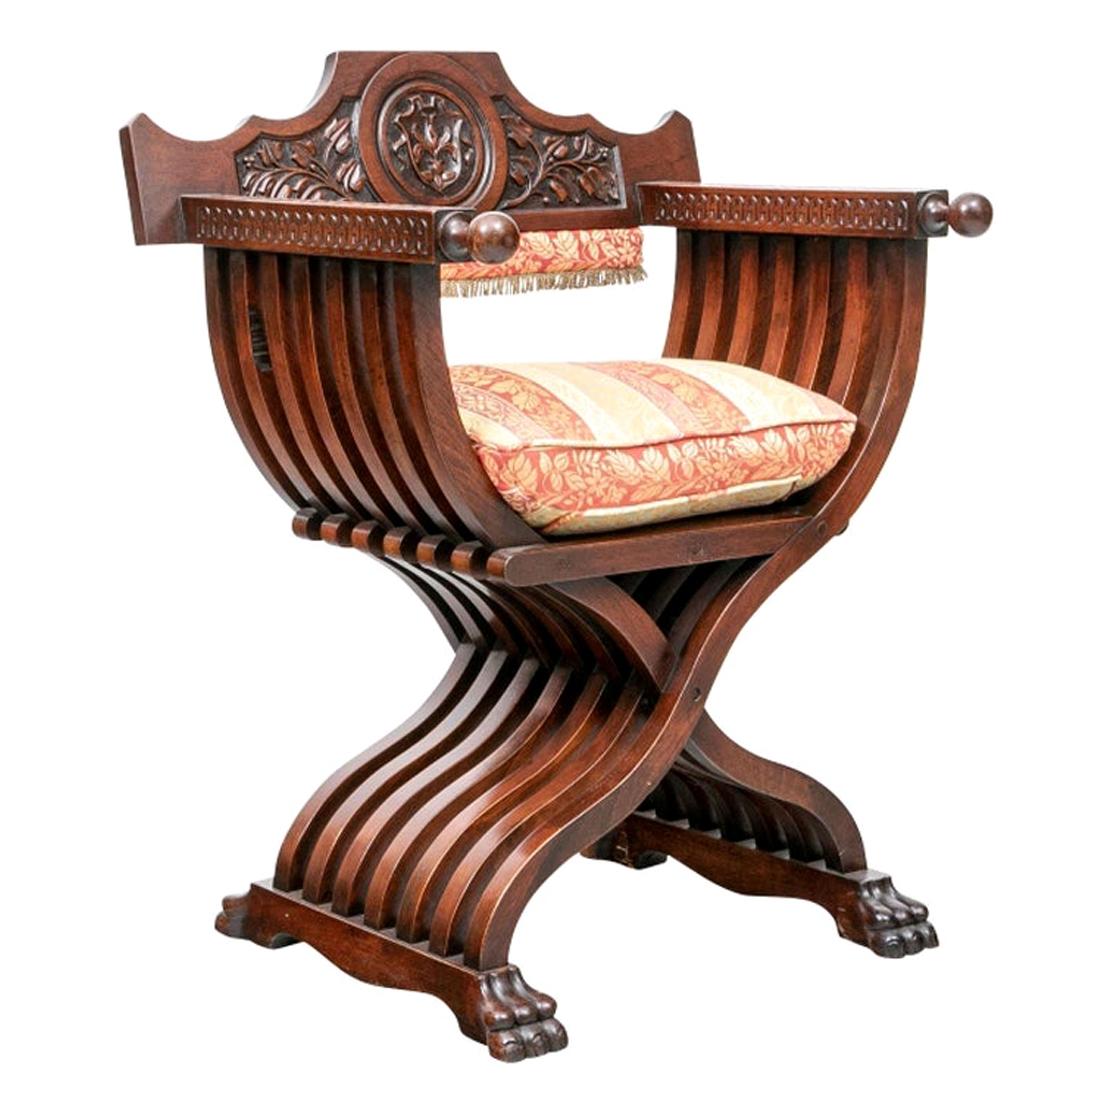 Walnut Renaissance Revival Folding Savonarola or Faldstool Chair